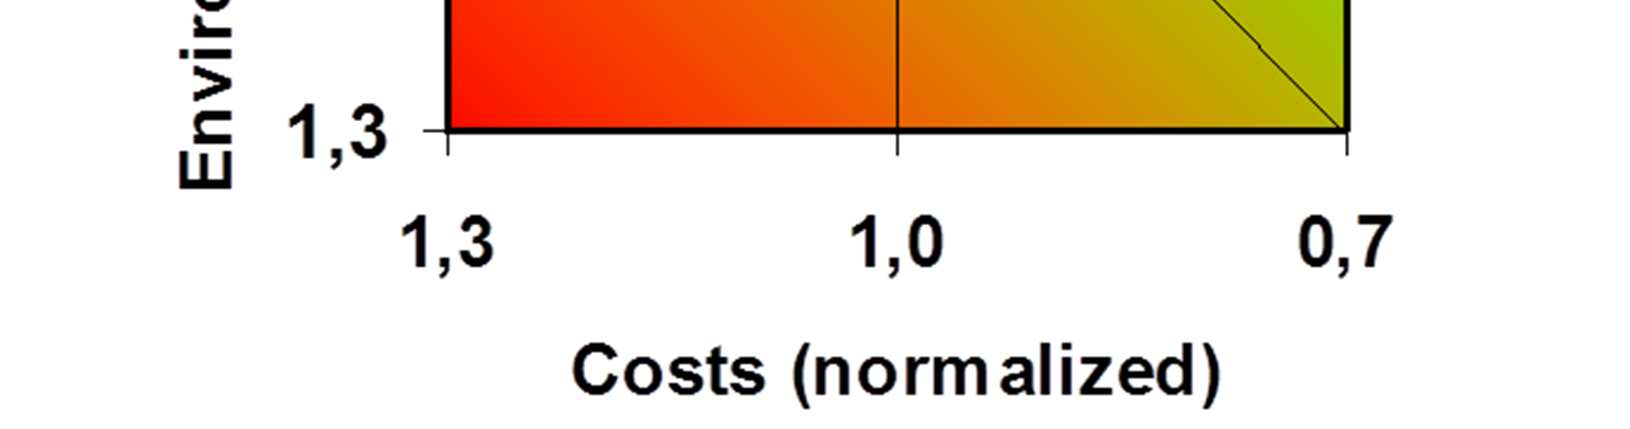 Modifizierung von Kunststoffen mit Nanopartikeln, siehe Polyesterbeispiel in der Grafik mit (rote, rechts) und ohne Modifizierung (grüne Kugel, links).